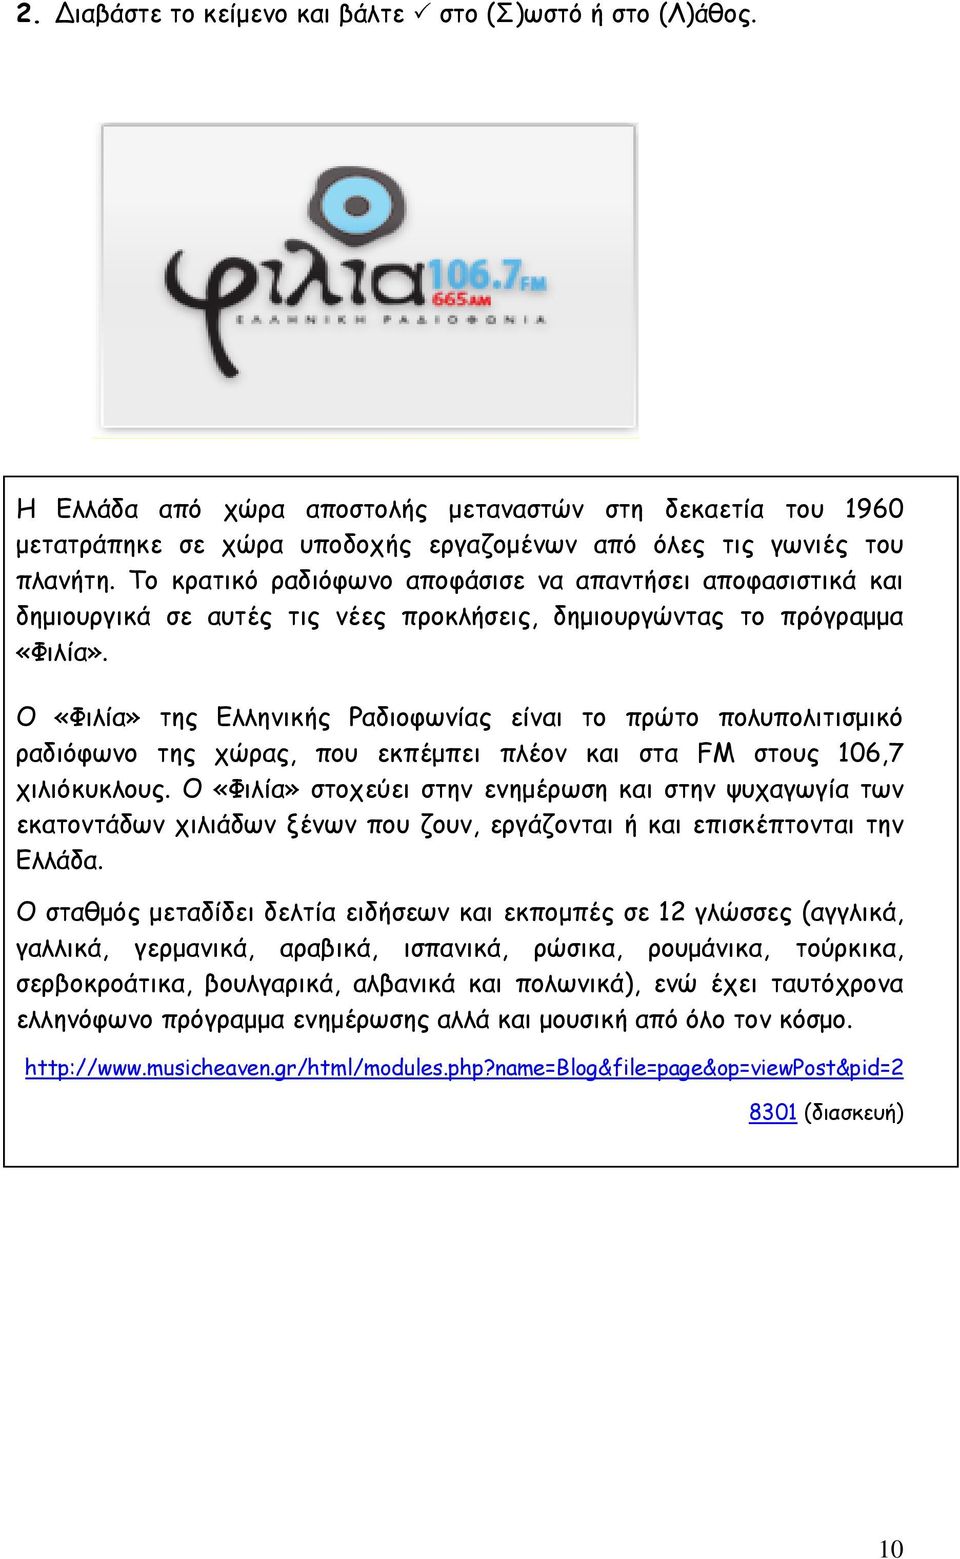 Ο «Φιλία» της Ελληνικής Ραδιοφωνίας είναι το πρώτο πολυπολιτισμικό ραδιόφωνο της χώρας, που εκπέμπει πλέον και στα FM στους 106,7 χιλιόκυκλους.